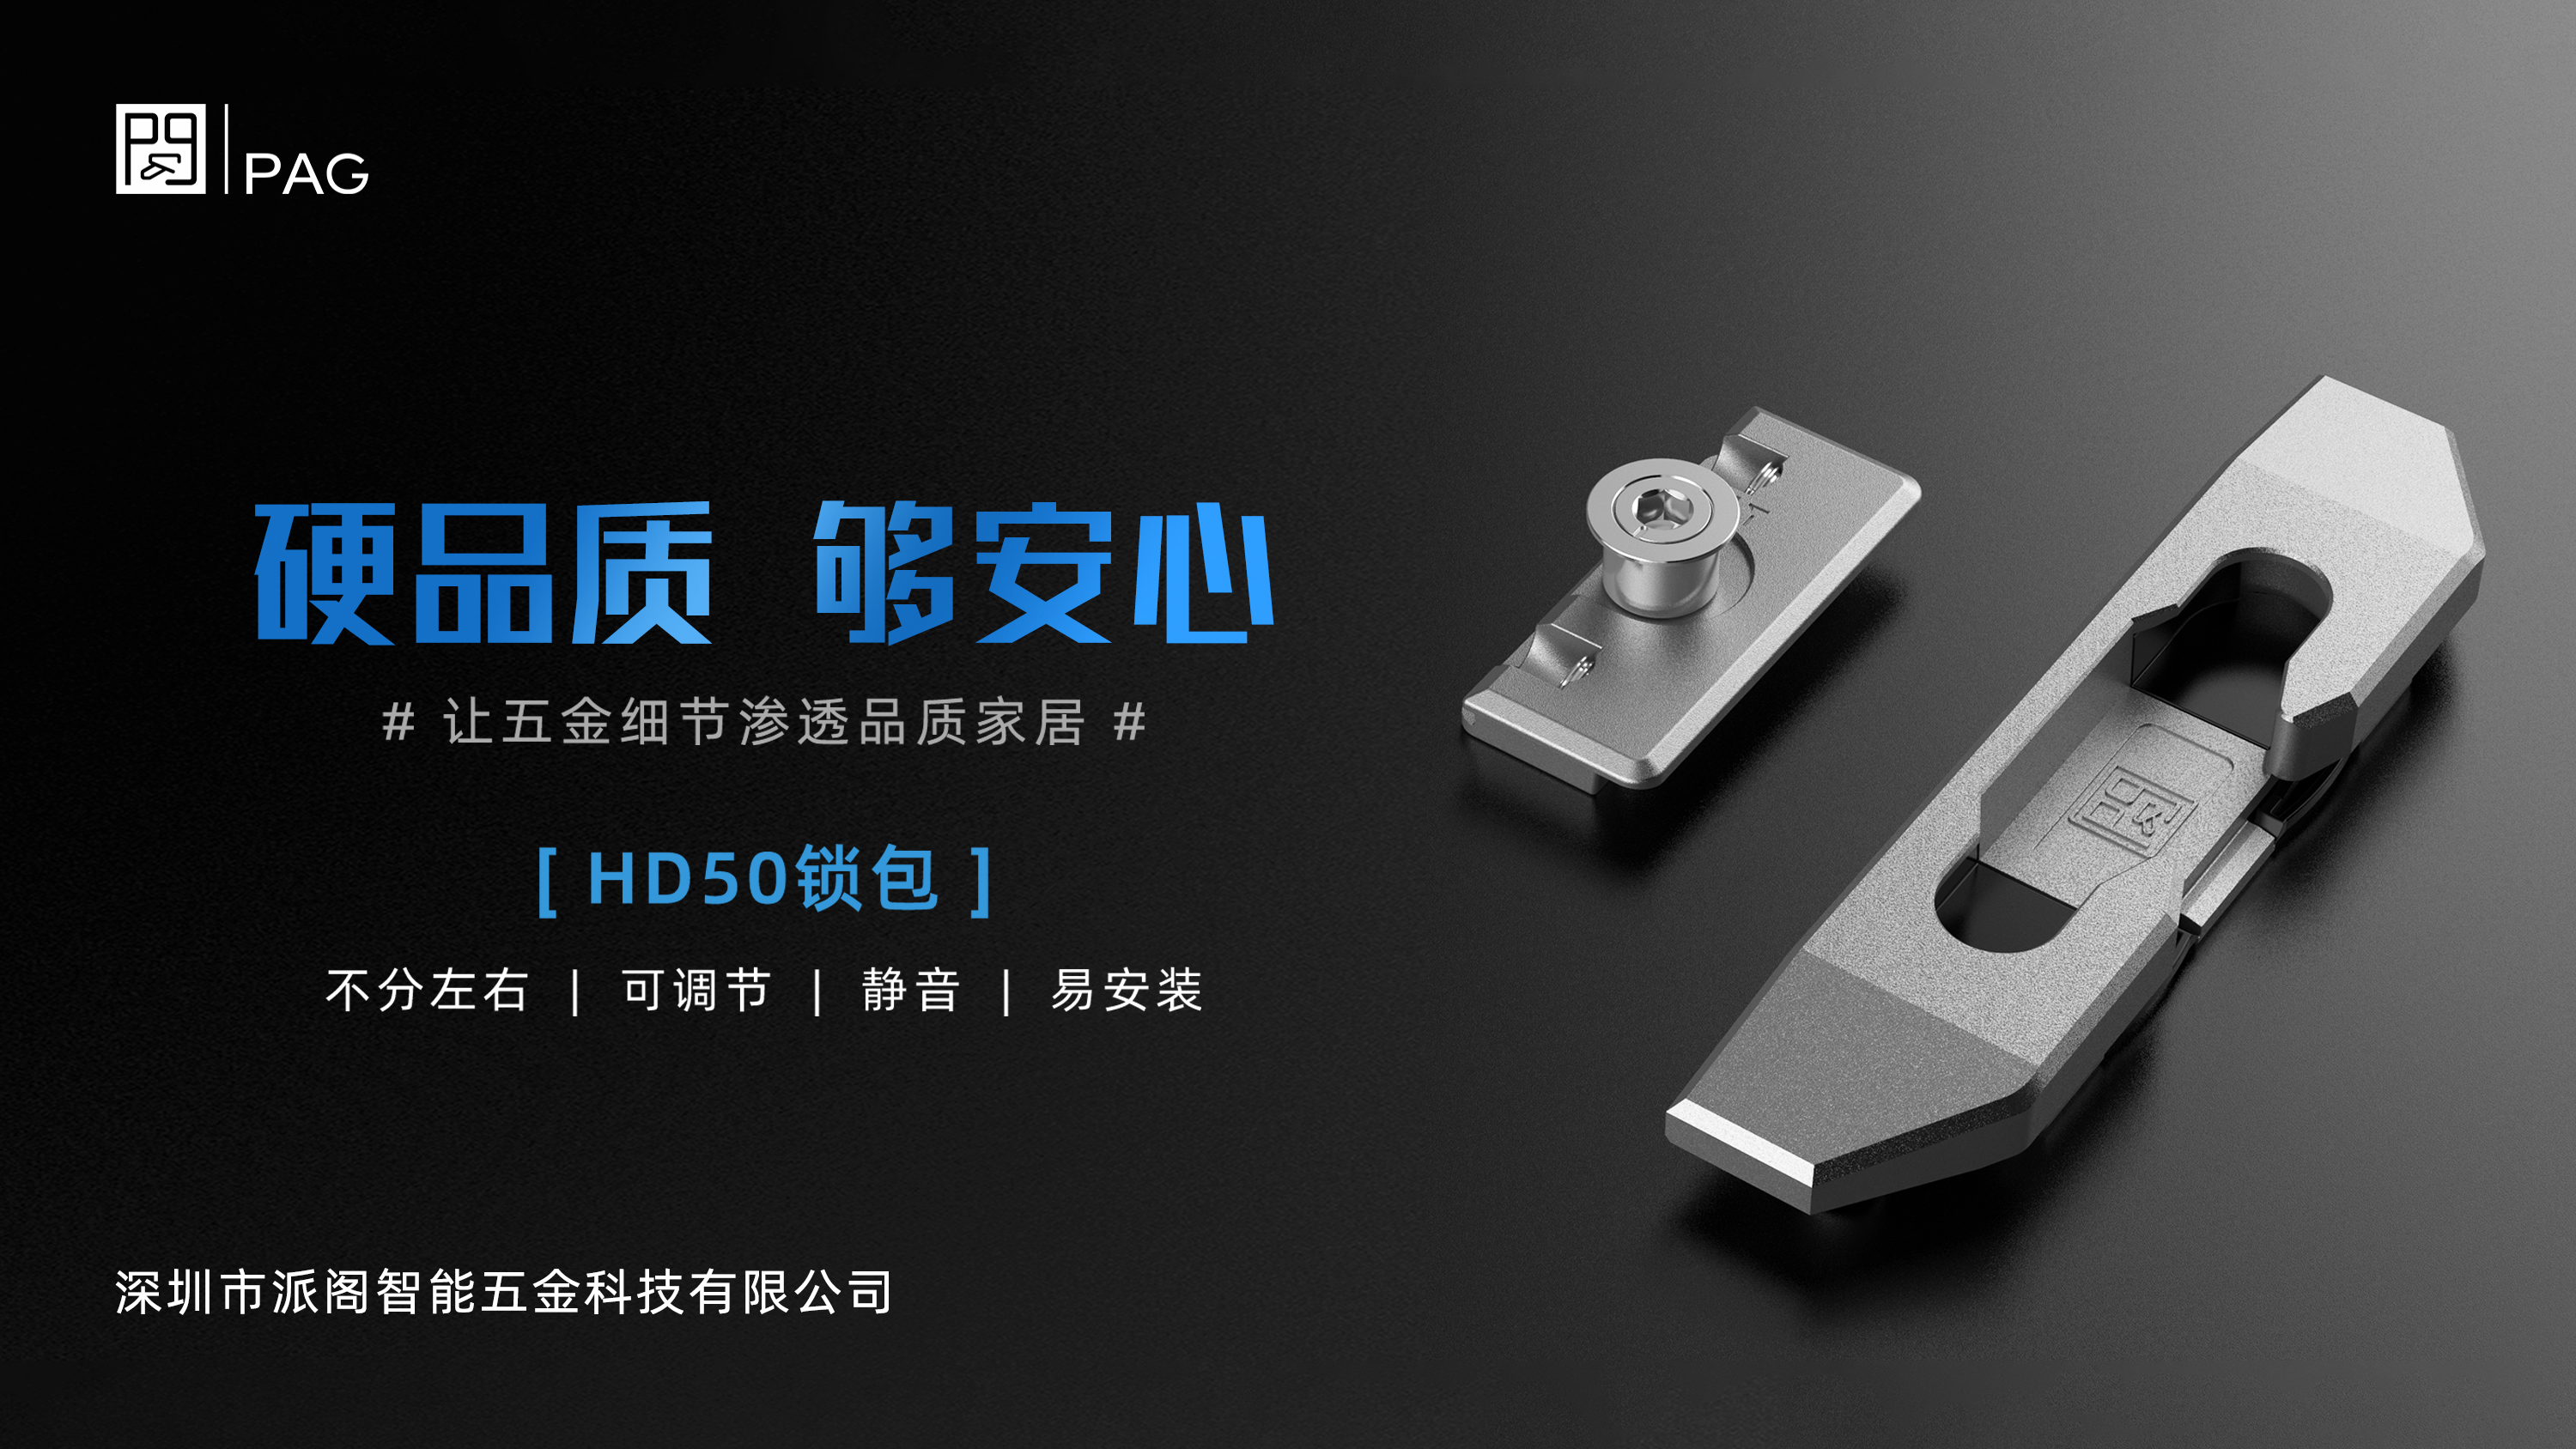 硬核品质 · 安心之选 ——【 HD50锁包 】